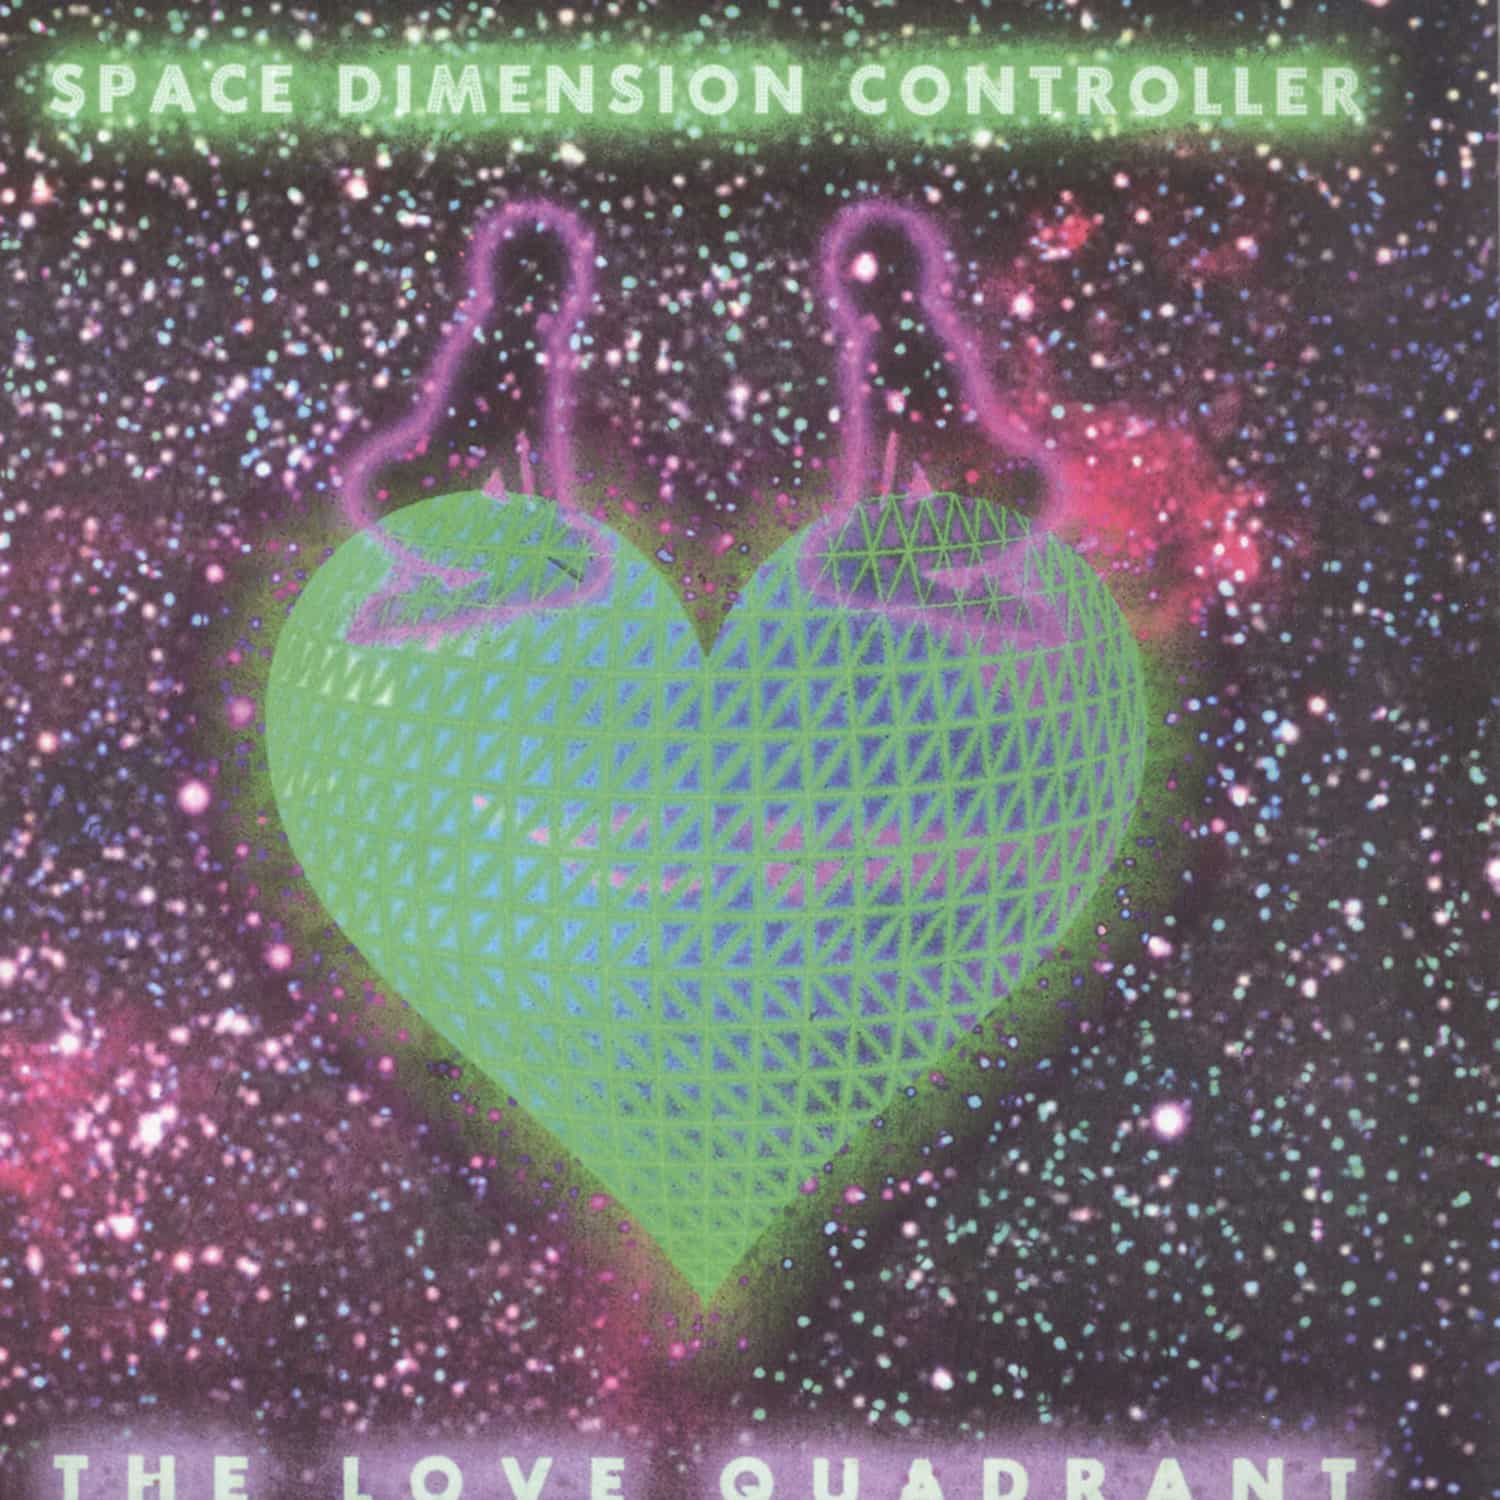 Space Dimension Controller - THE LOVE QUADRANT